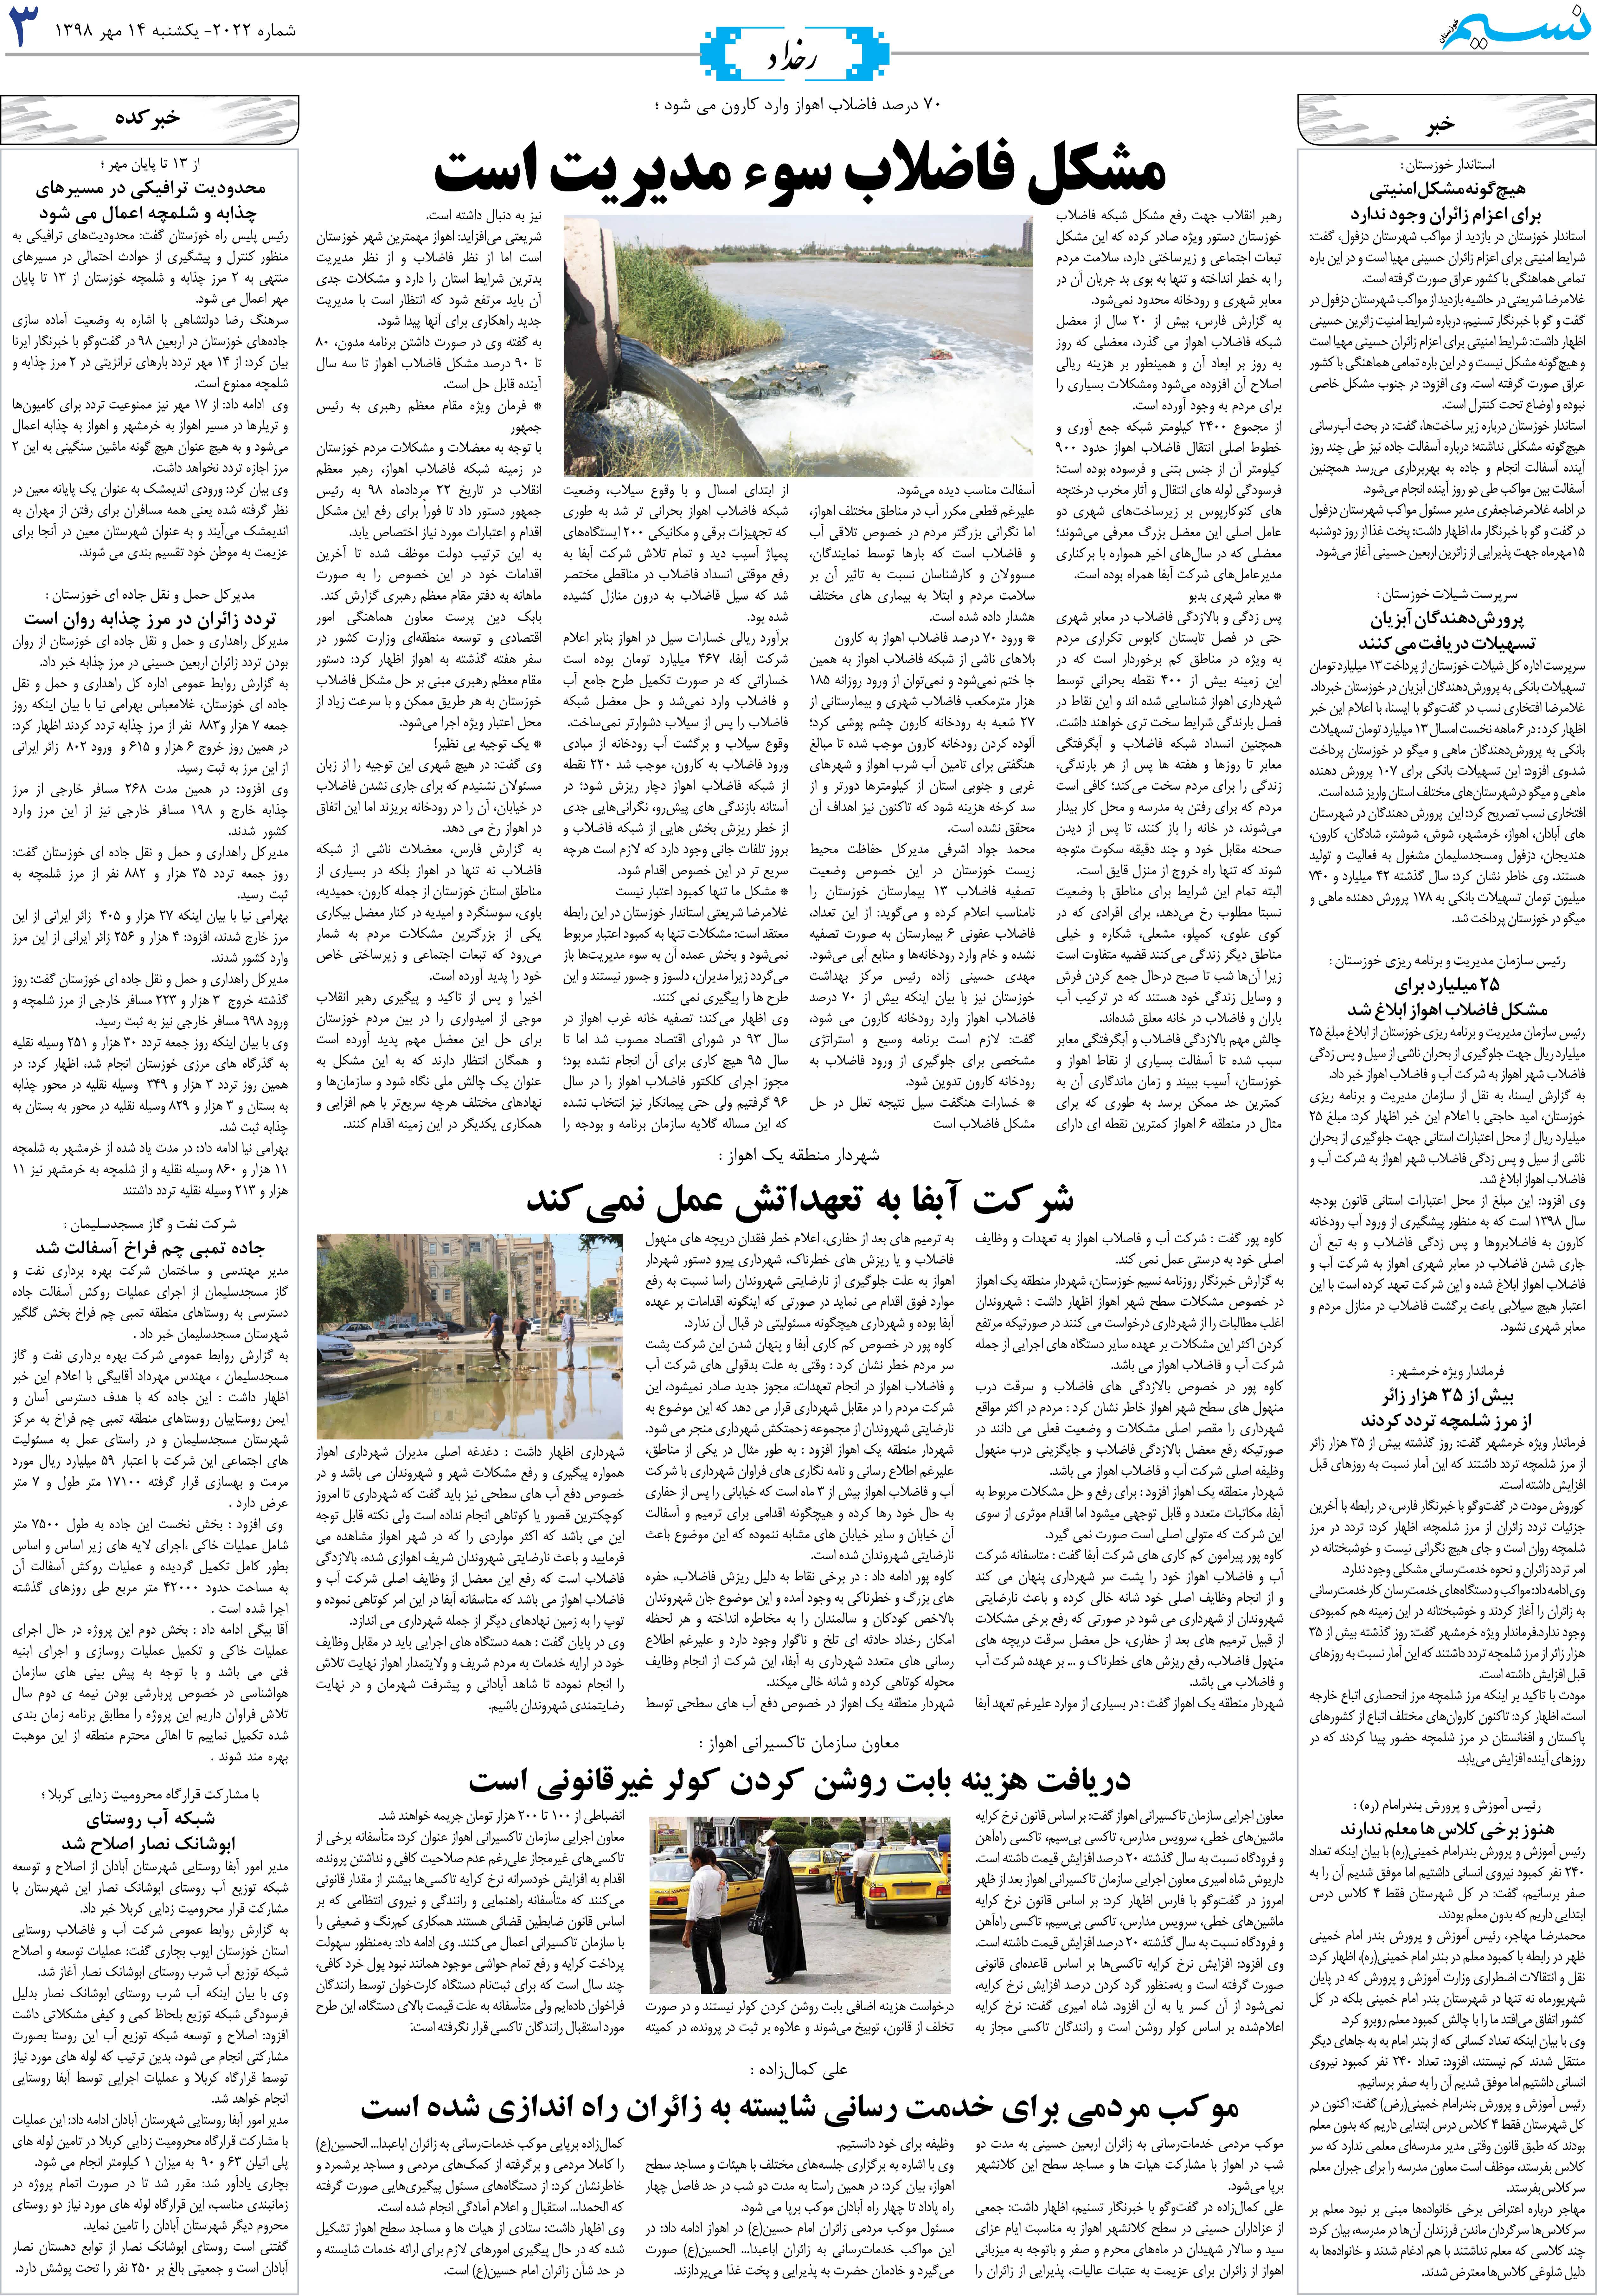 صفحه رخداد روزنامه نسیم شماره 2022